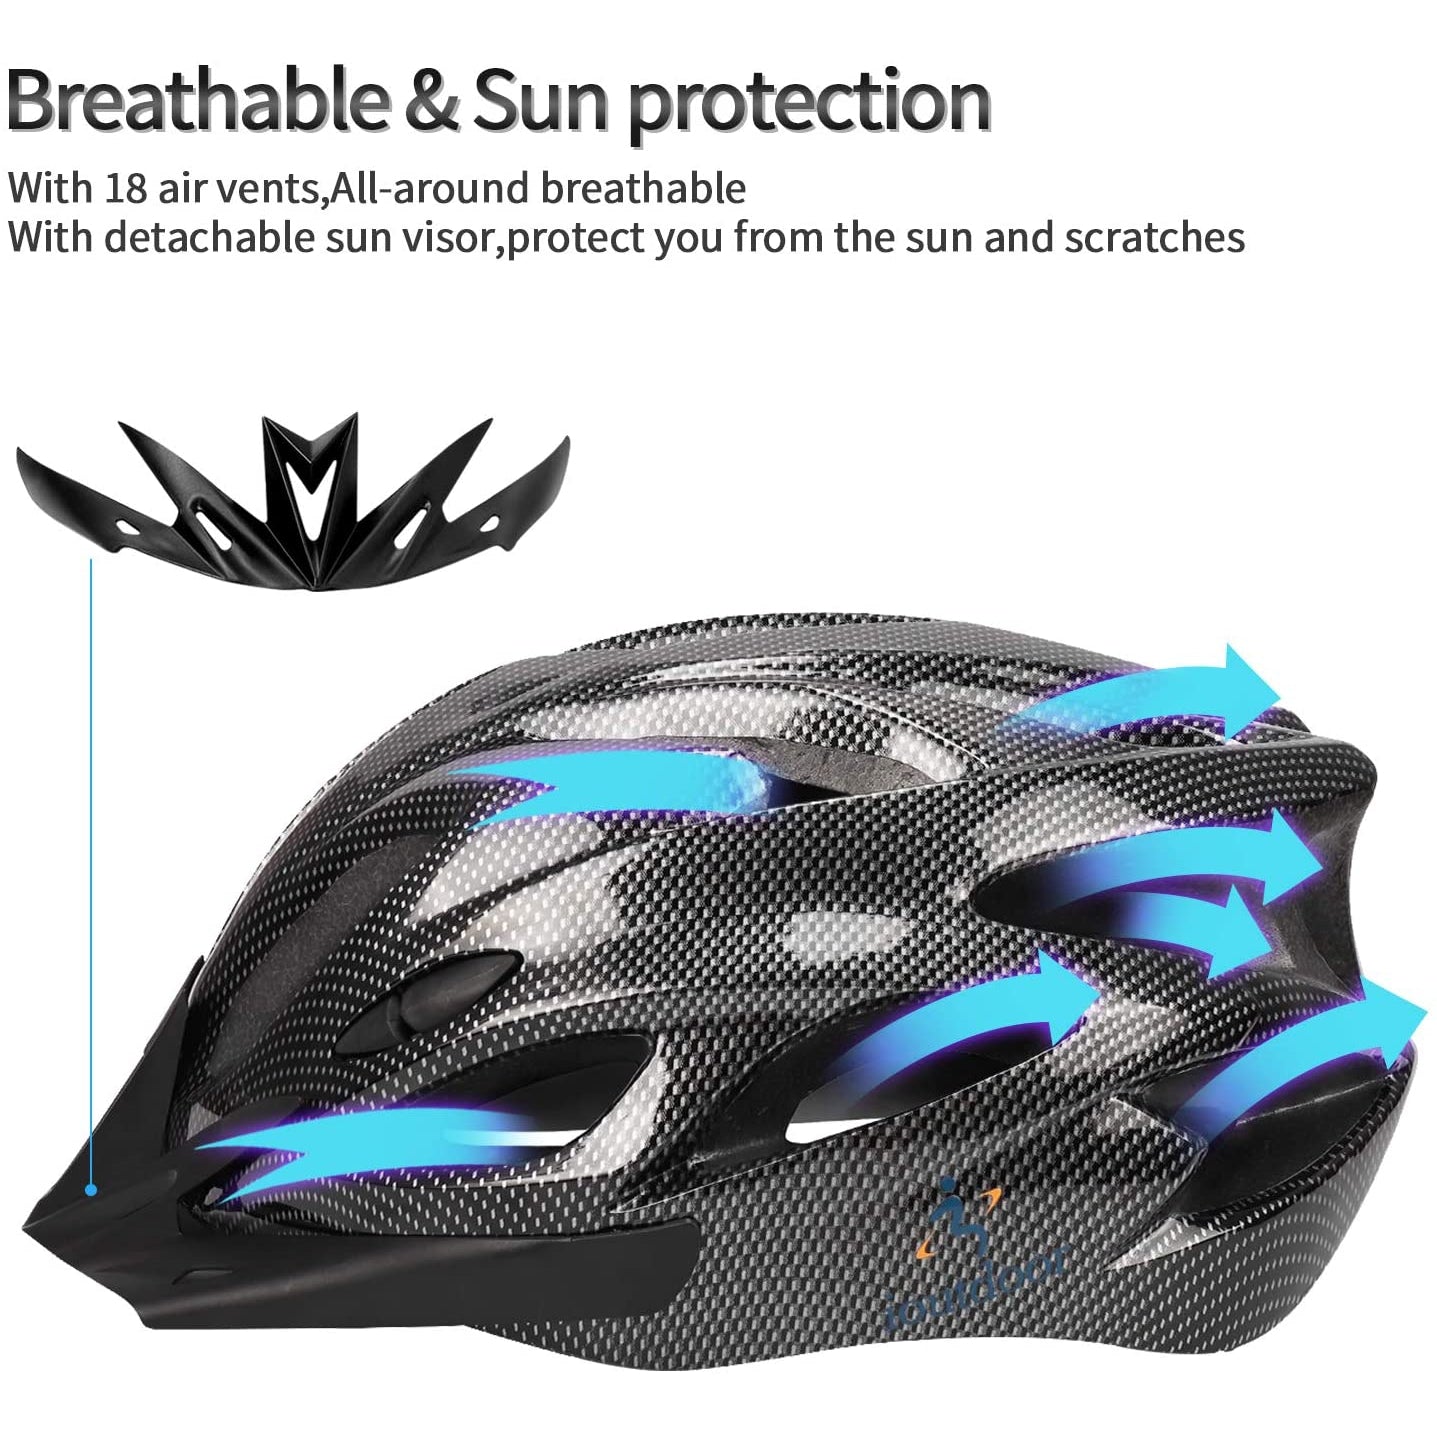 iOutdoor Bike Helmet With Visor, Adjustable Size 56-62CM, Large